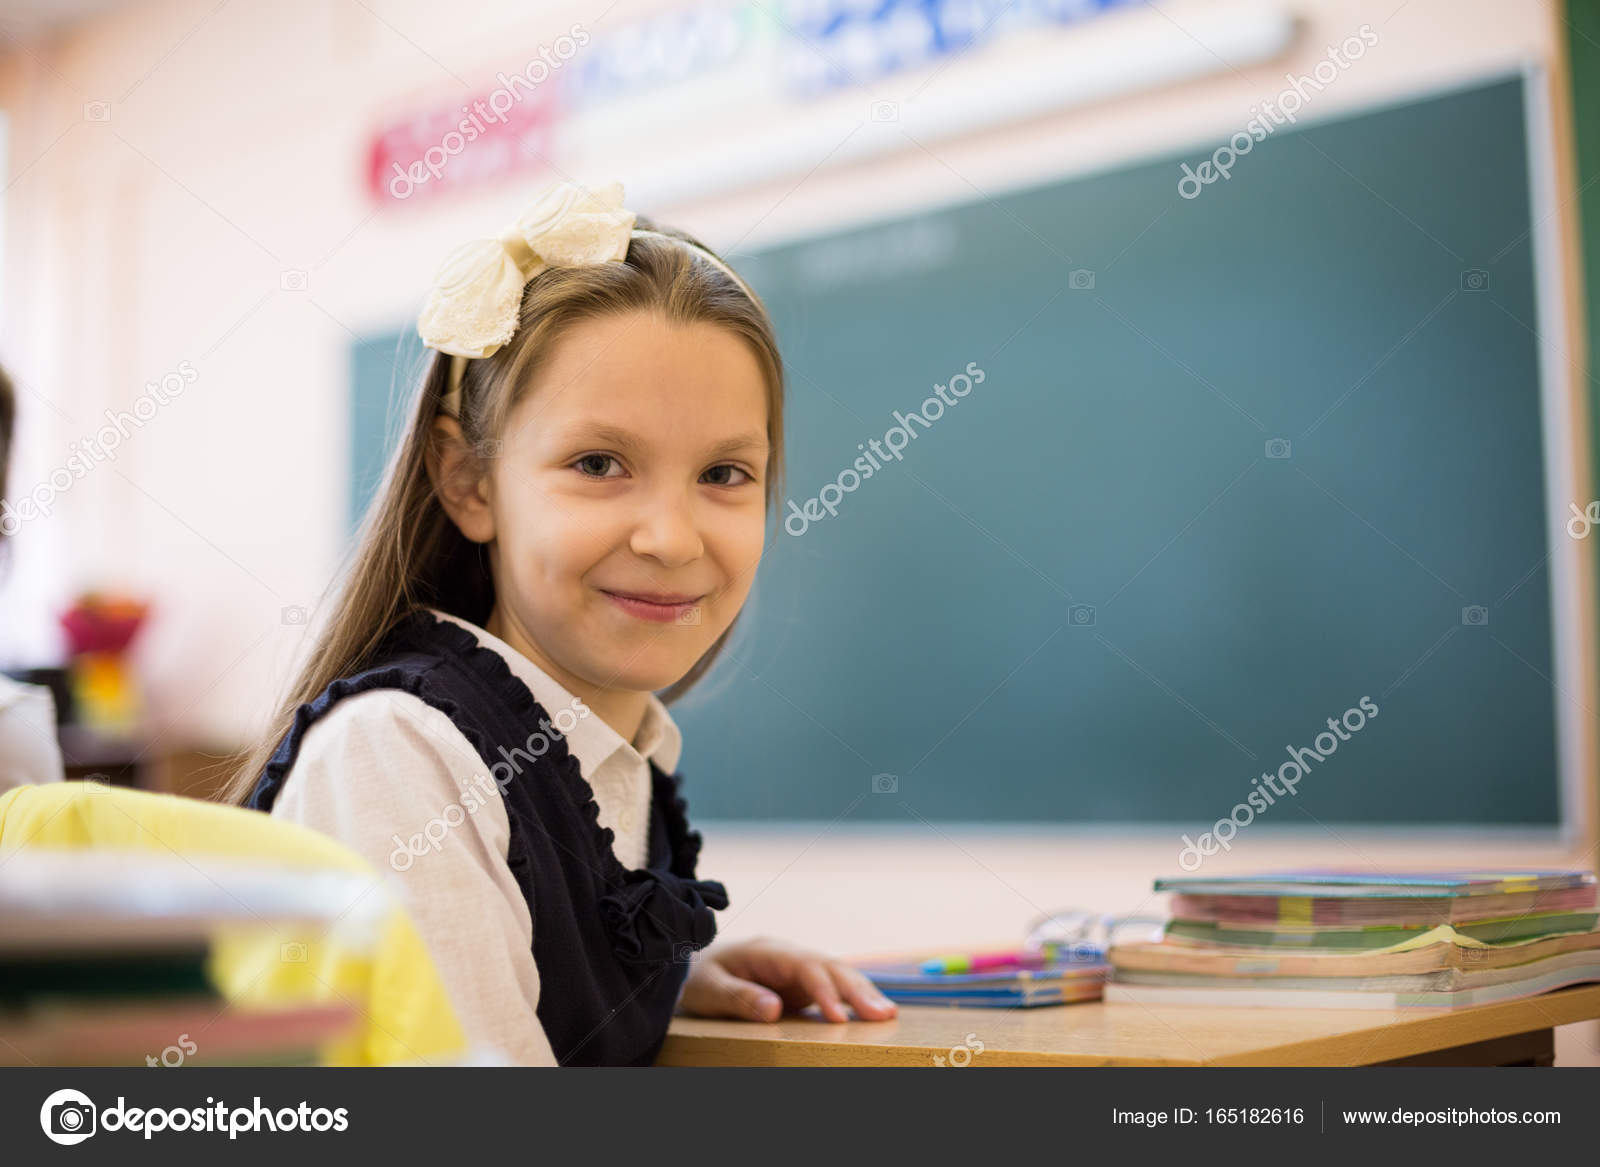 Schoolgirl classroom